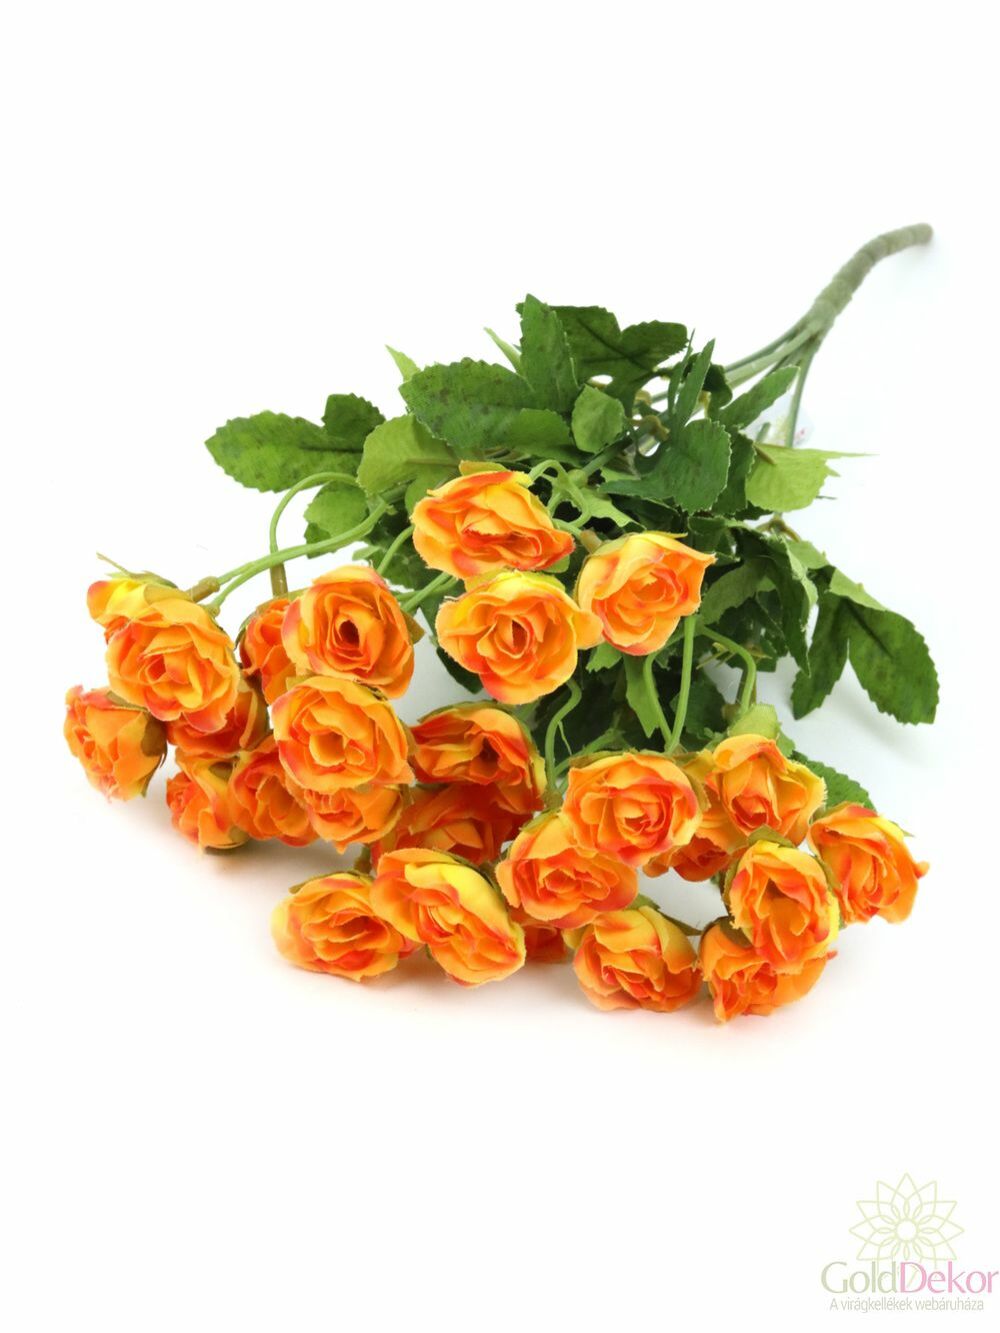 Apró virágú rózsa csokor - Narancs